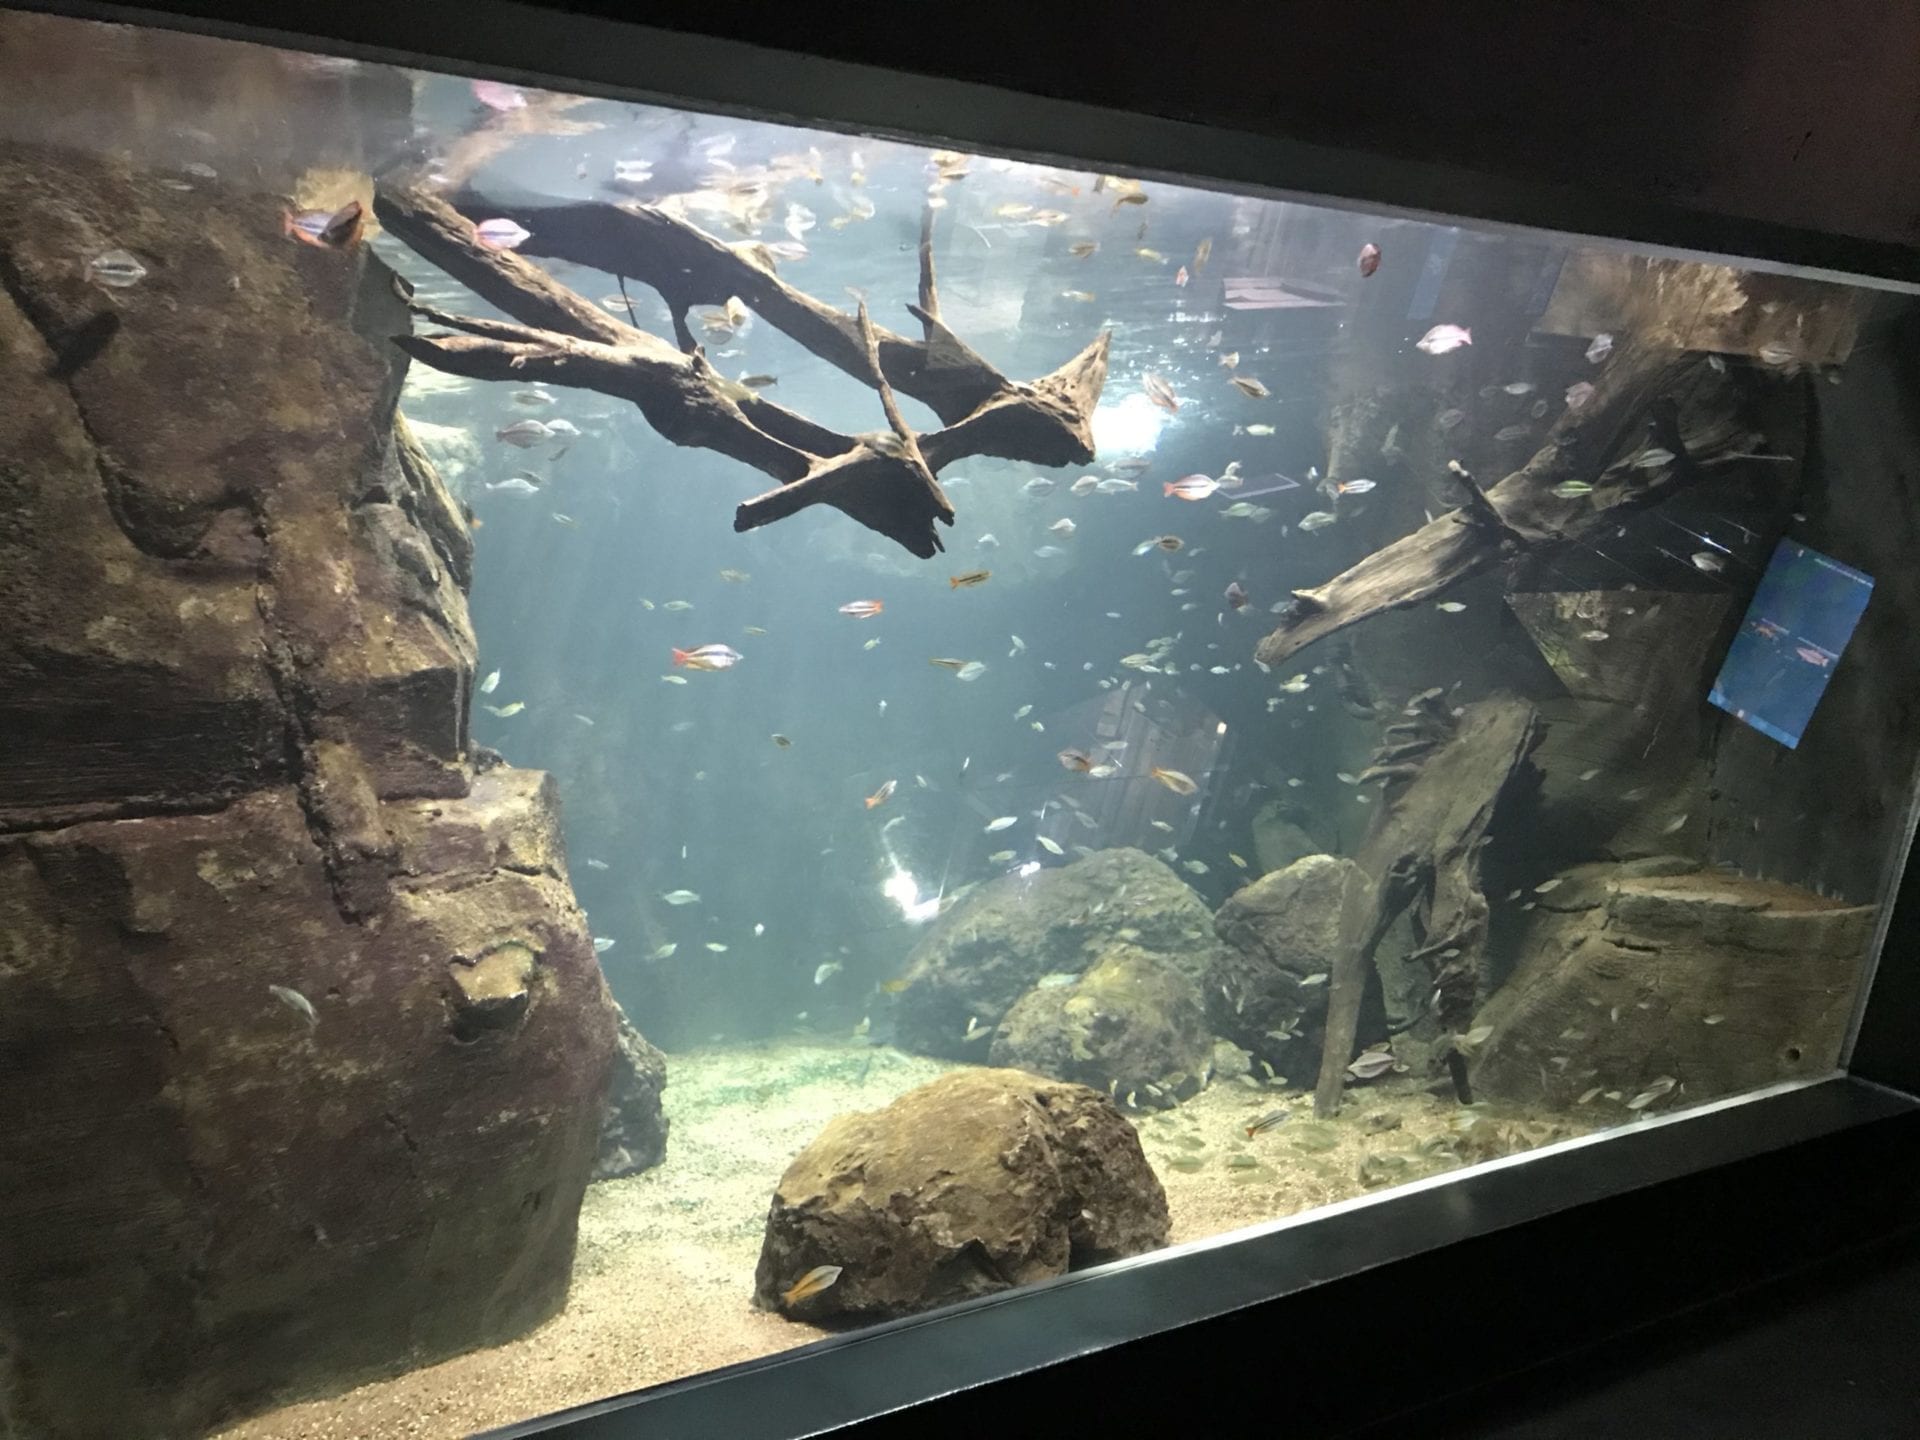 Fascination en eau douce à l'AQUATIS Aquarium-Vivarium Lausanne